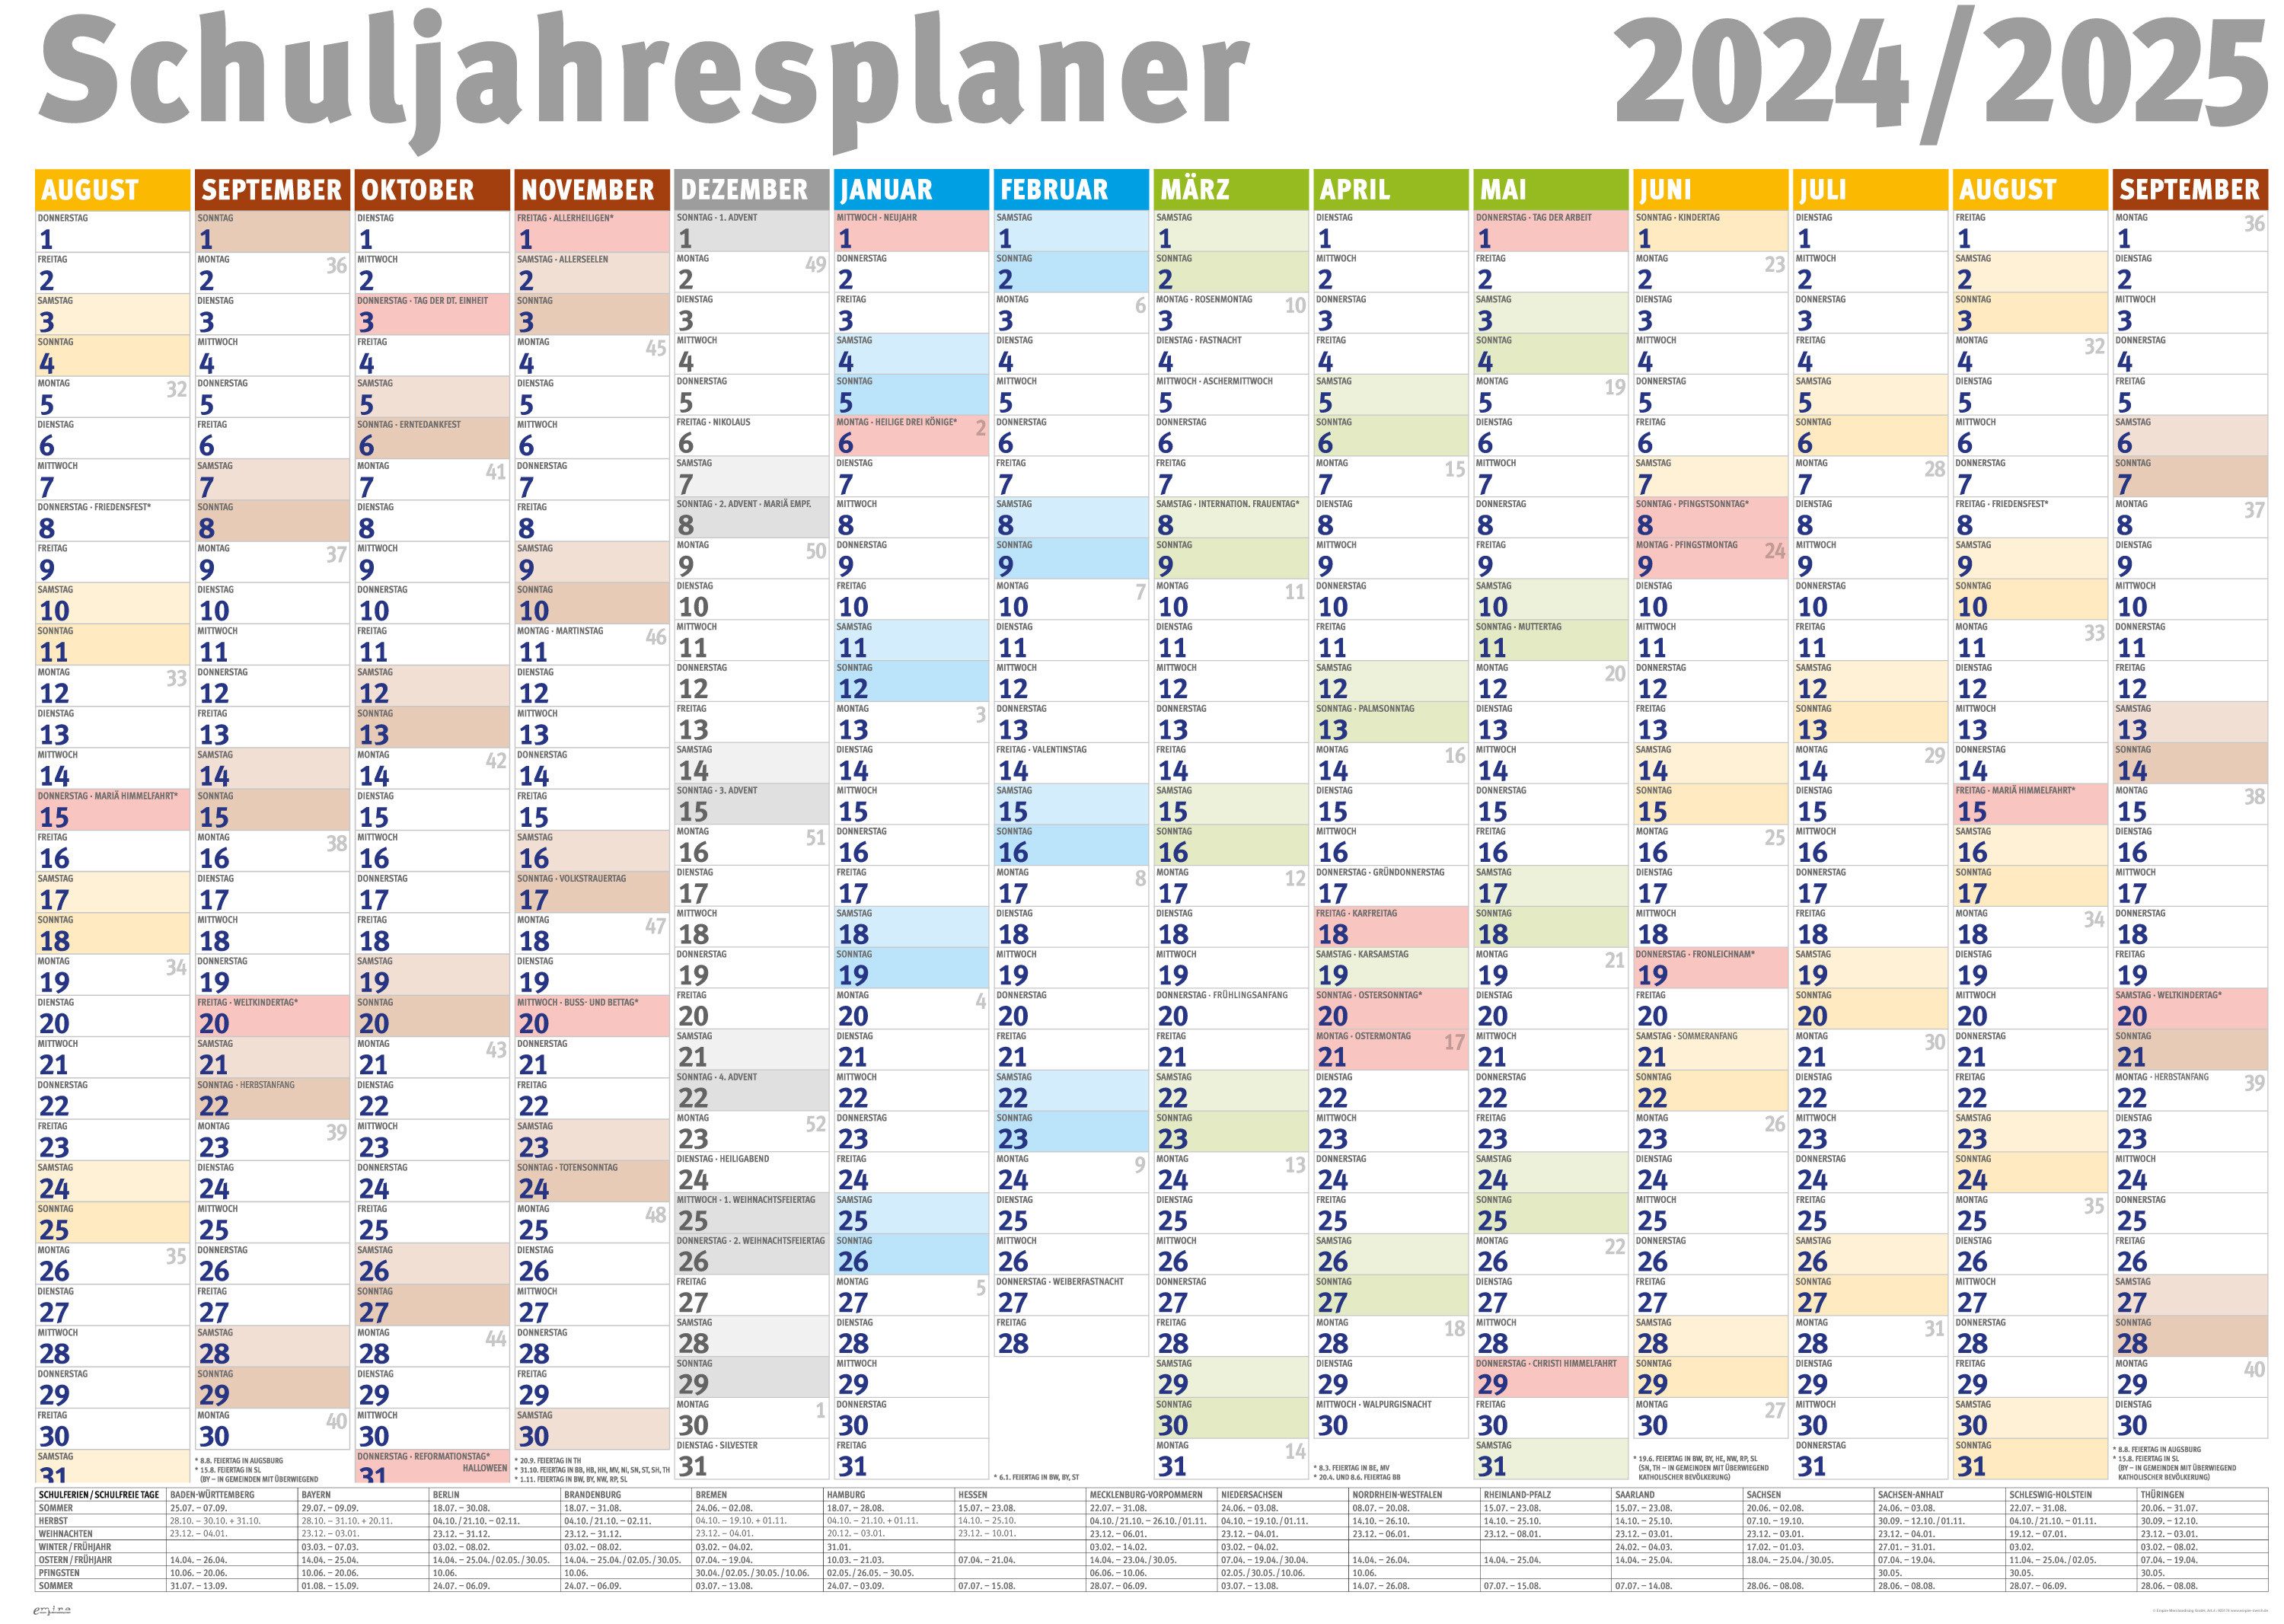 empireposter Jahresplaner Schuljahresplaner 2024/2025 Wandplaner - Giant XXL Poster - 140x100 cm